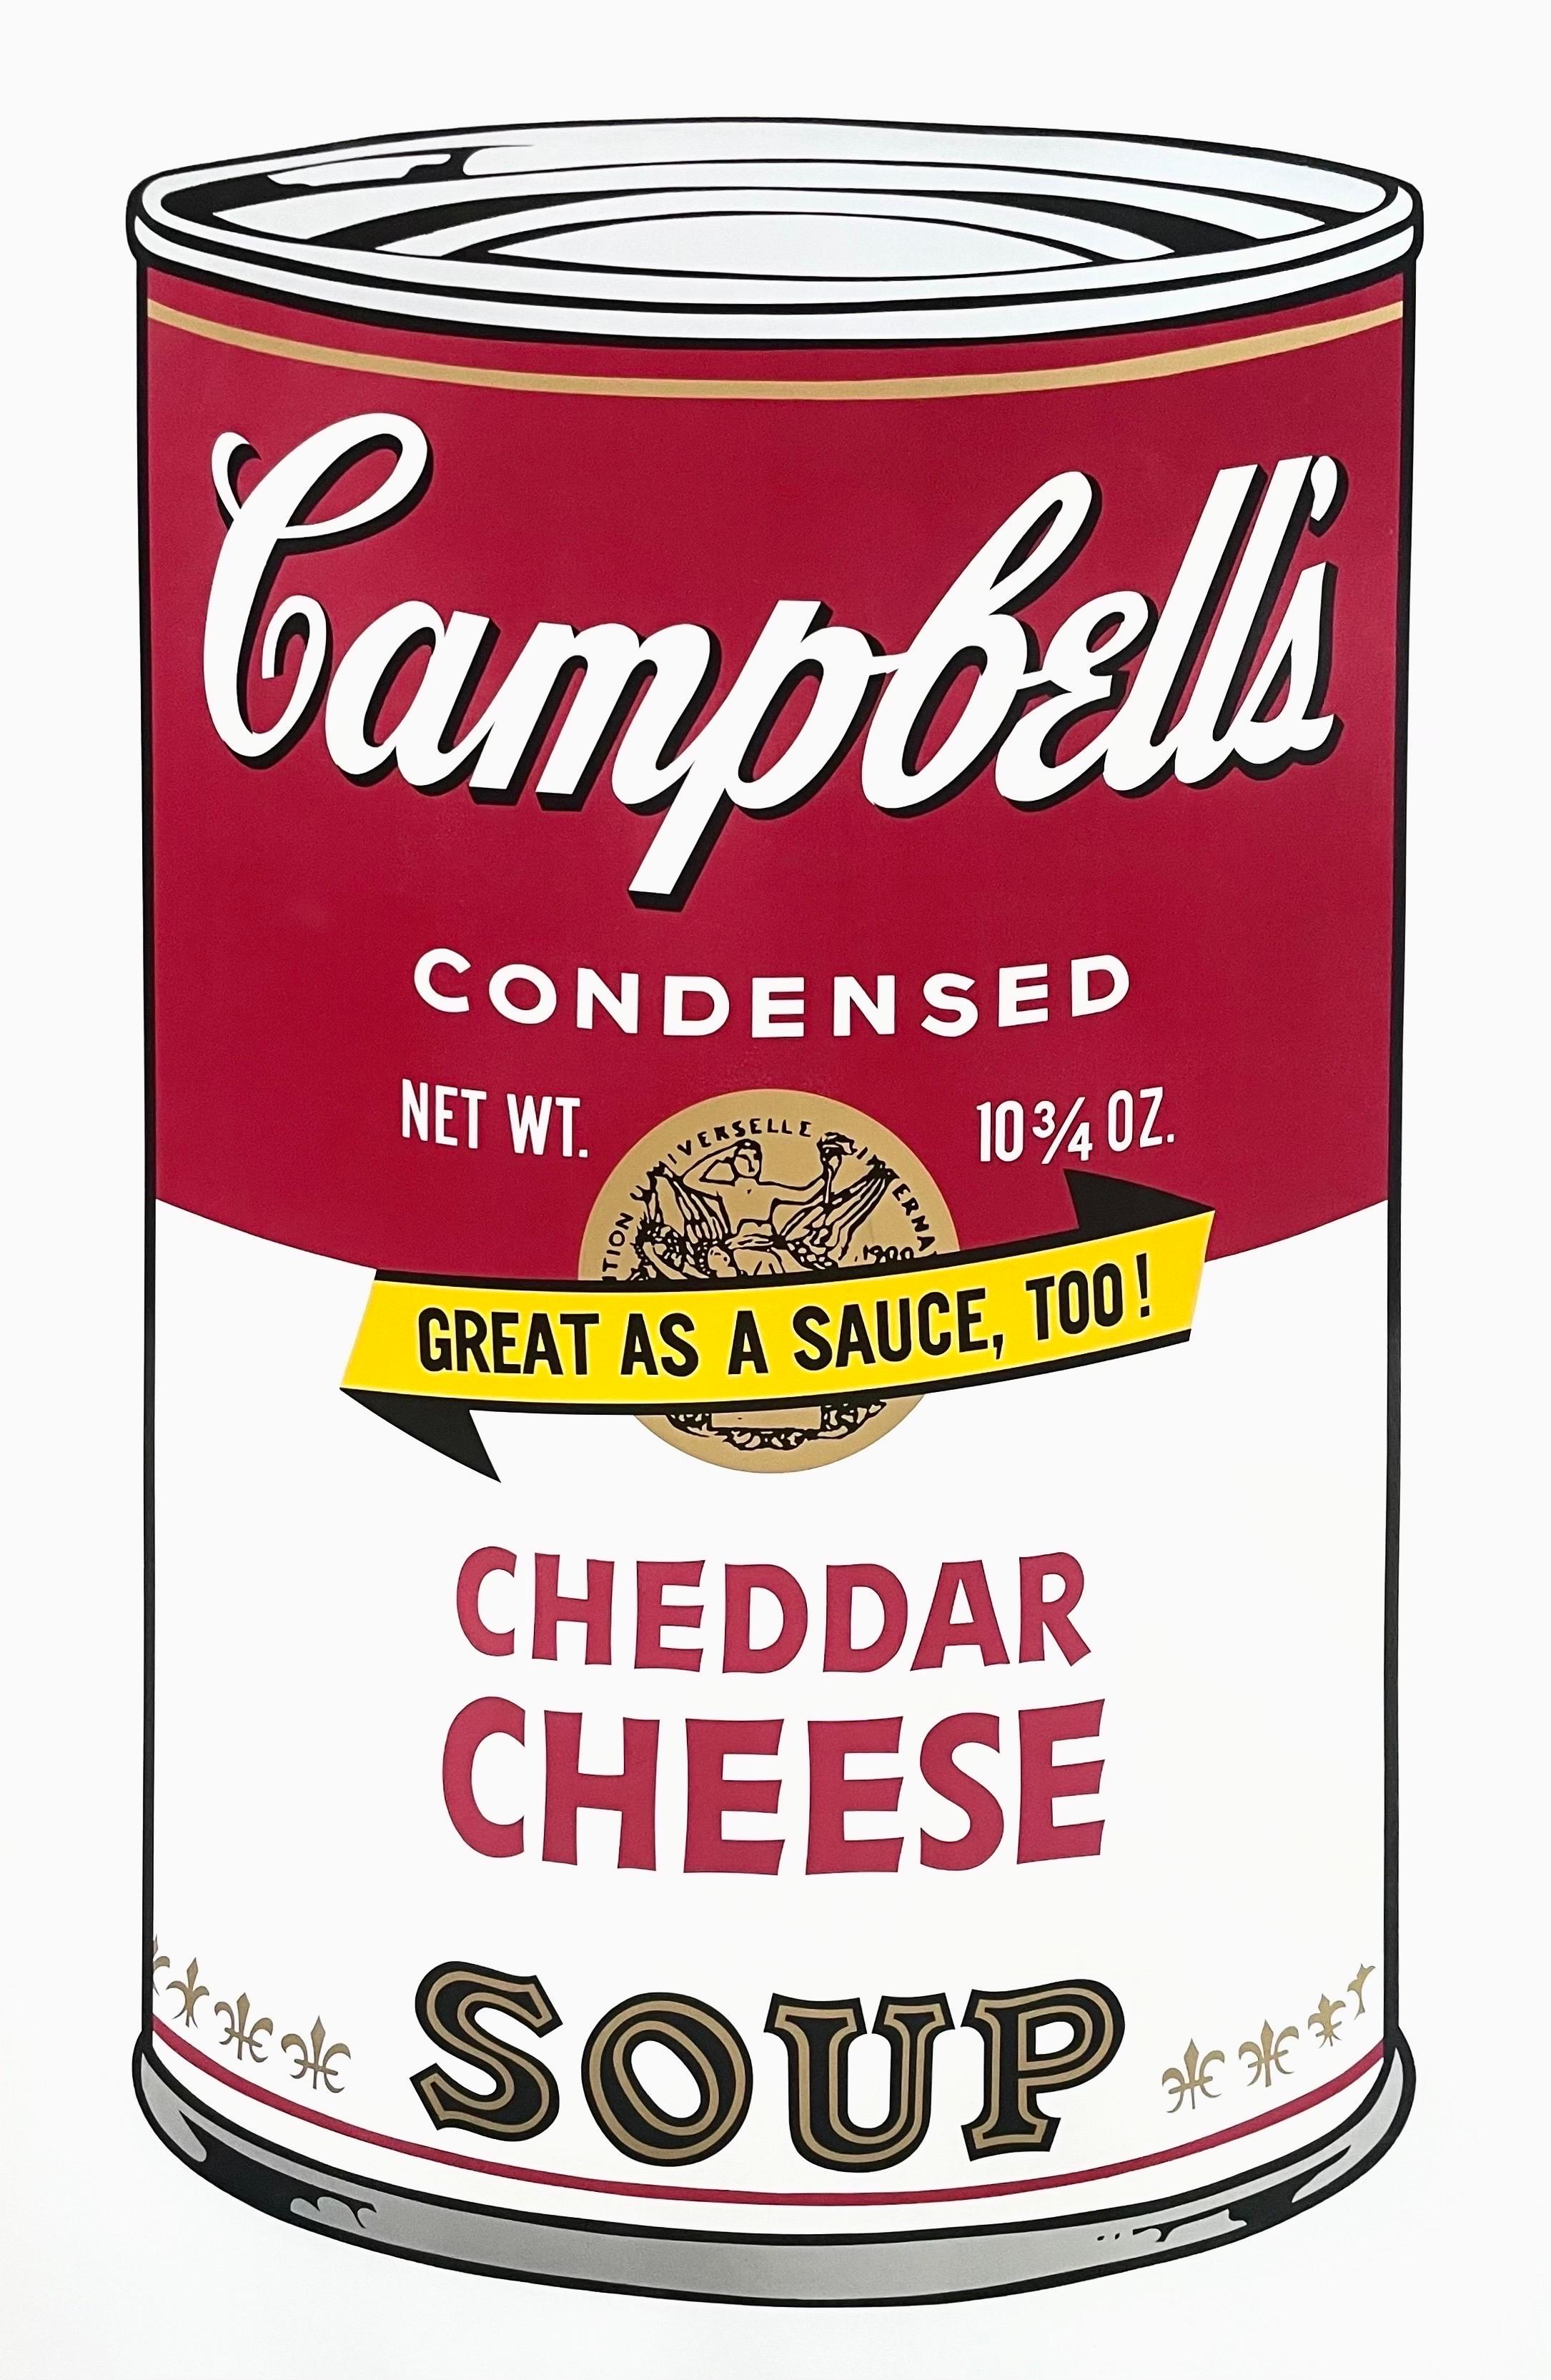 Artistics : Andy Warhol (1928-1987)
Titre : Soupe II de Campbell, fromage cheddar (F&S II.63)
Année : 1969
Edition : 250, plus 26 épreuves
Support : Sérigraphie sur papier vélin
Taille : 35 x 23 pouces
Condit : Excellent
Inscription : Signée au